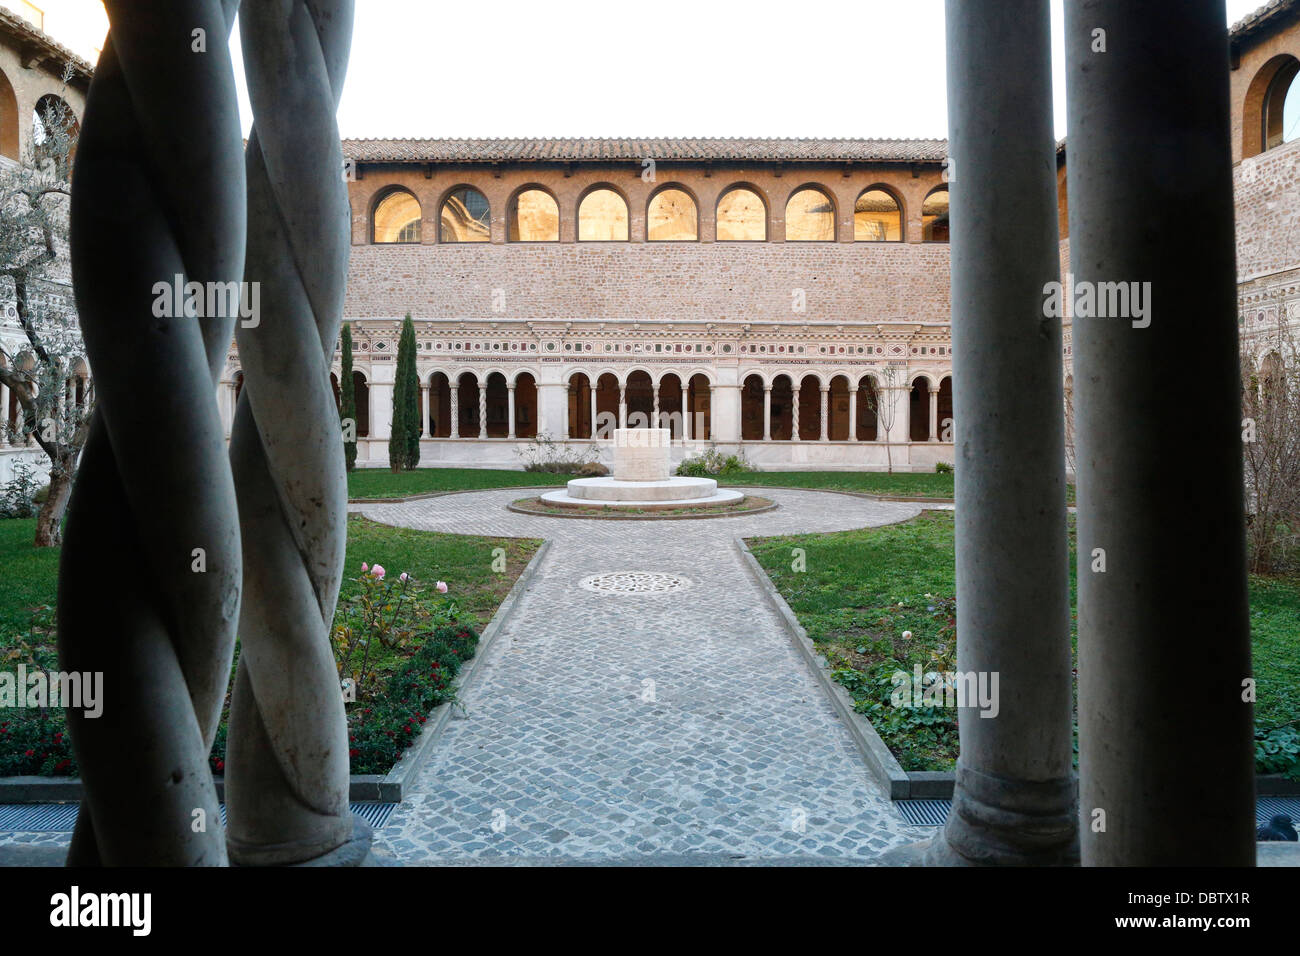 Columnas torcidas de mármol en los Vassaletto claustros en el arco de la Pontificia Basílica de San Juan de Letrán, Roma, Lazio, Italia Foto de stock